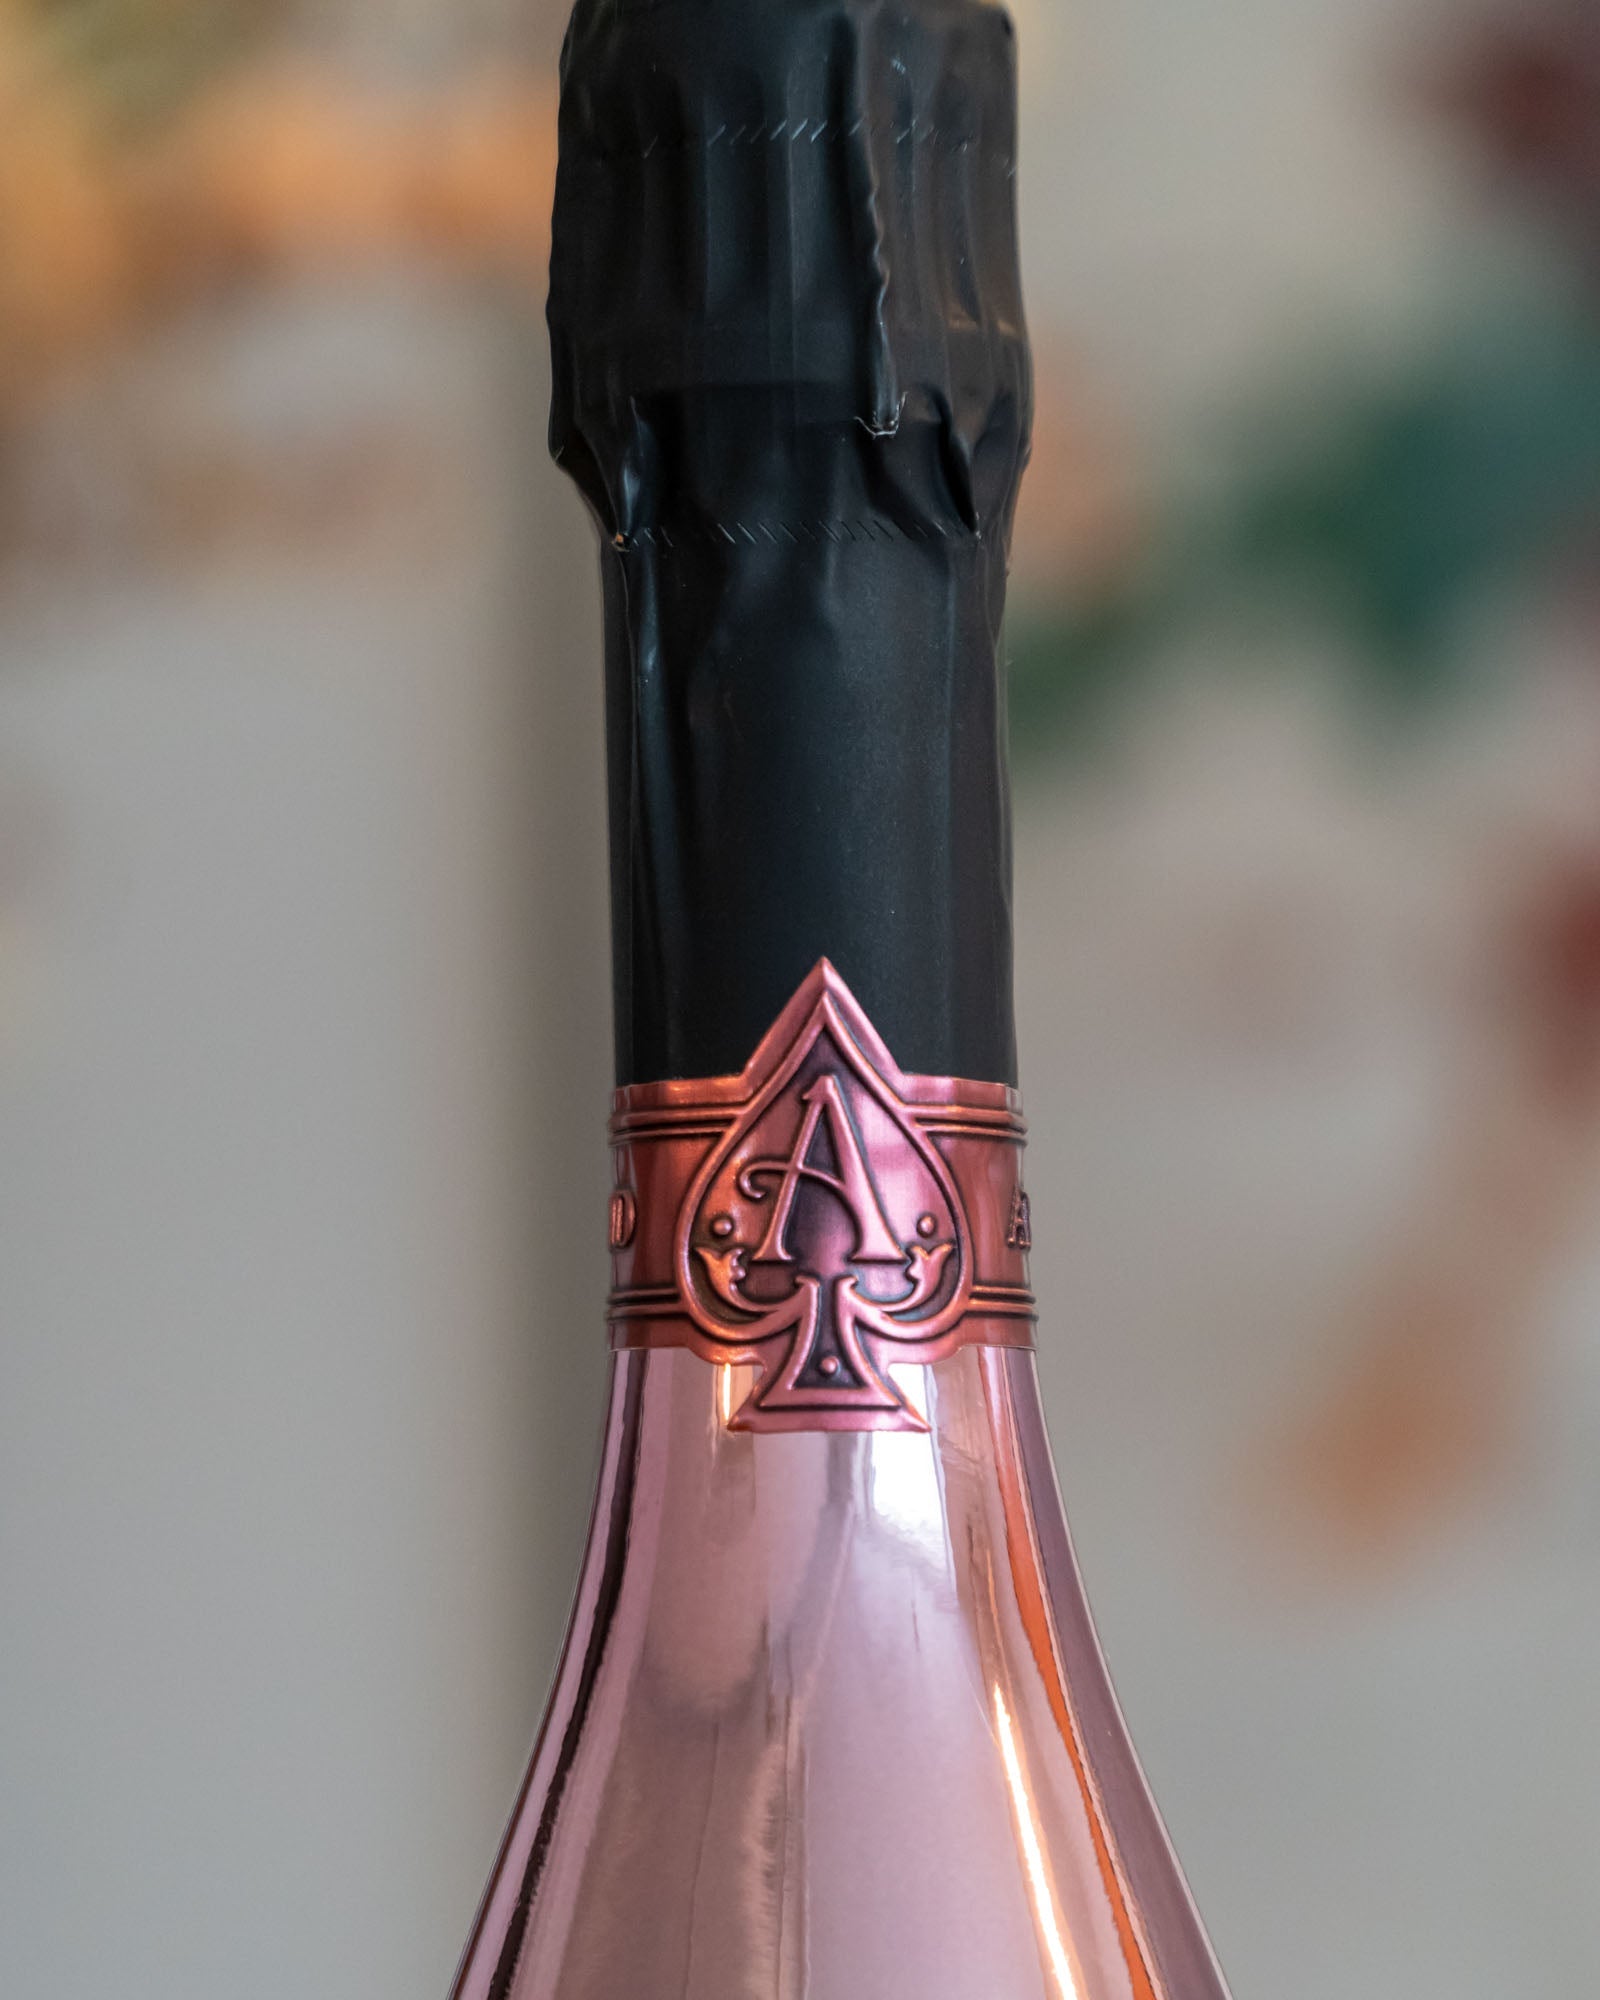 rose ace of spades bottle